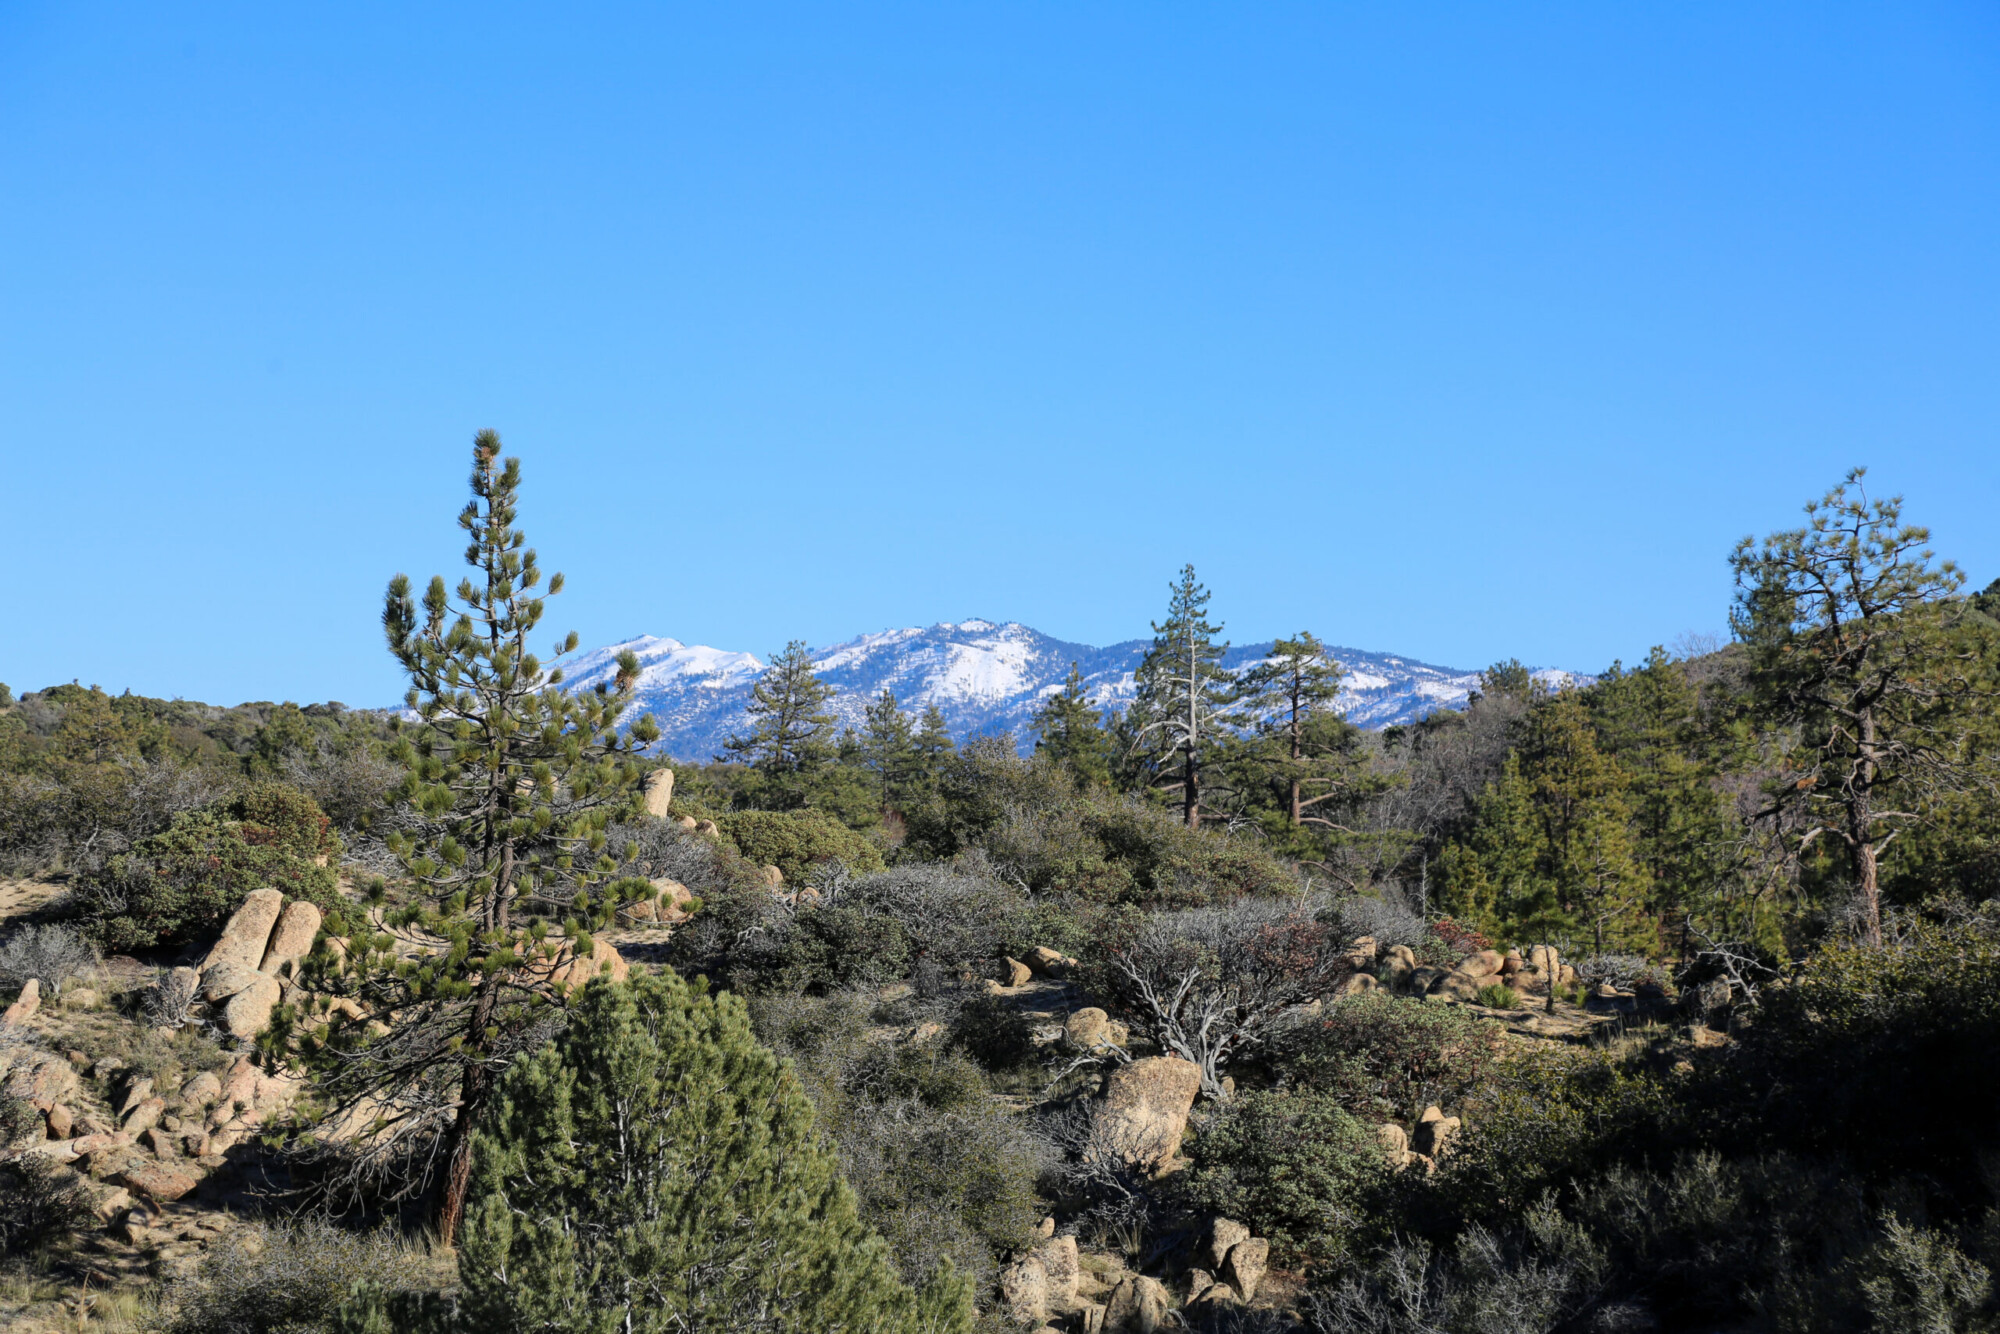 View of the Pinnacles hiking trail near Lake Arrowhead, California.